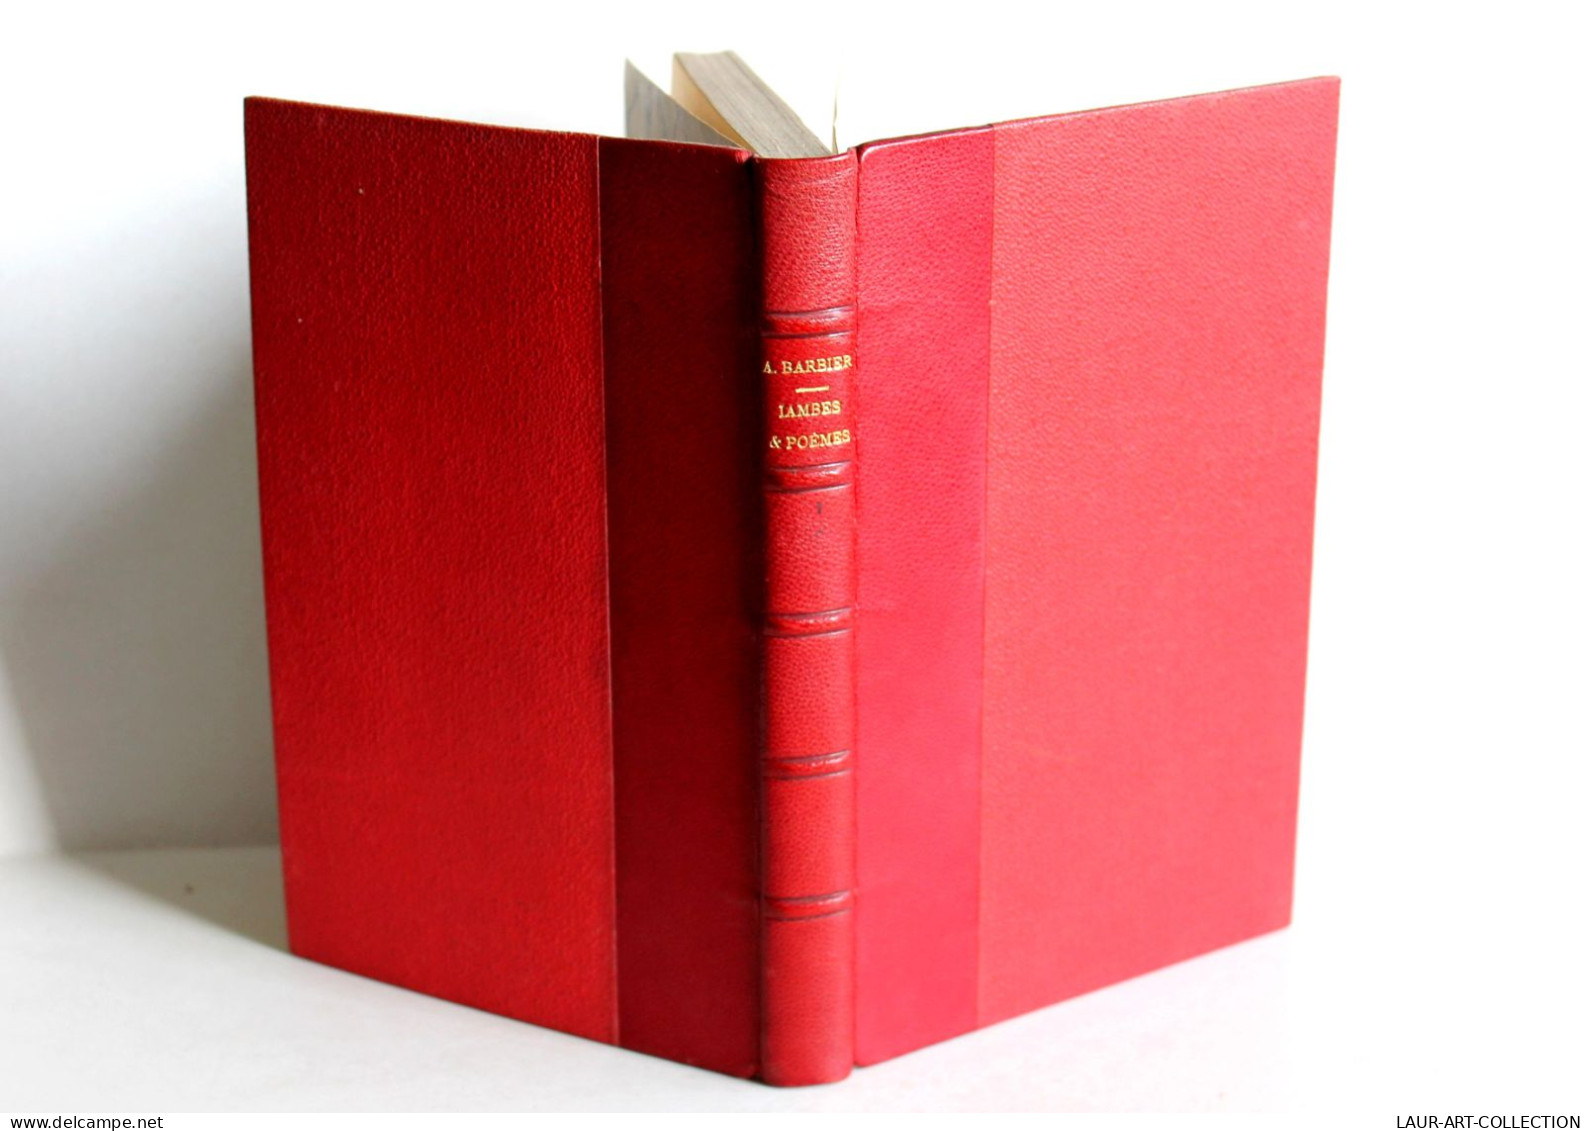 LAMBES ET POEMES Par AUGUSTE BARBIER, 4e EDITION 1841 MASGANA, POESIE / ANCIEN LIVRE XIXe SIECLE (1803.50) - Franse Schrijvers